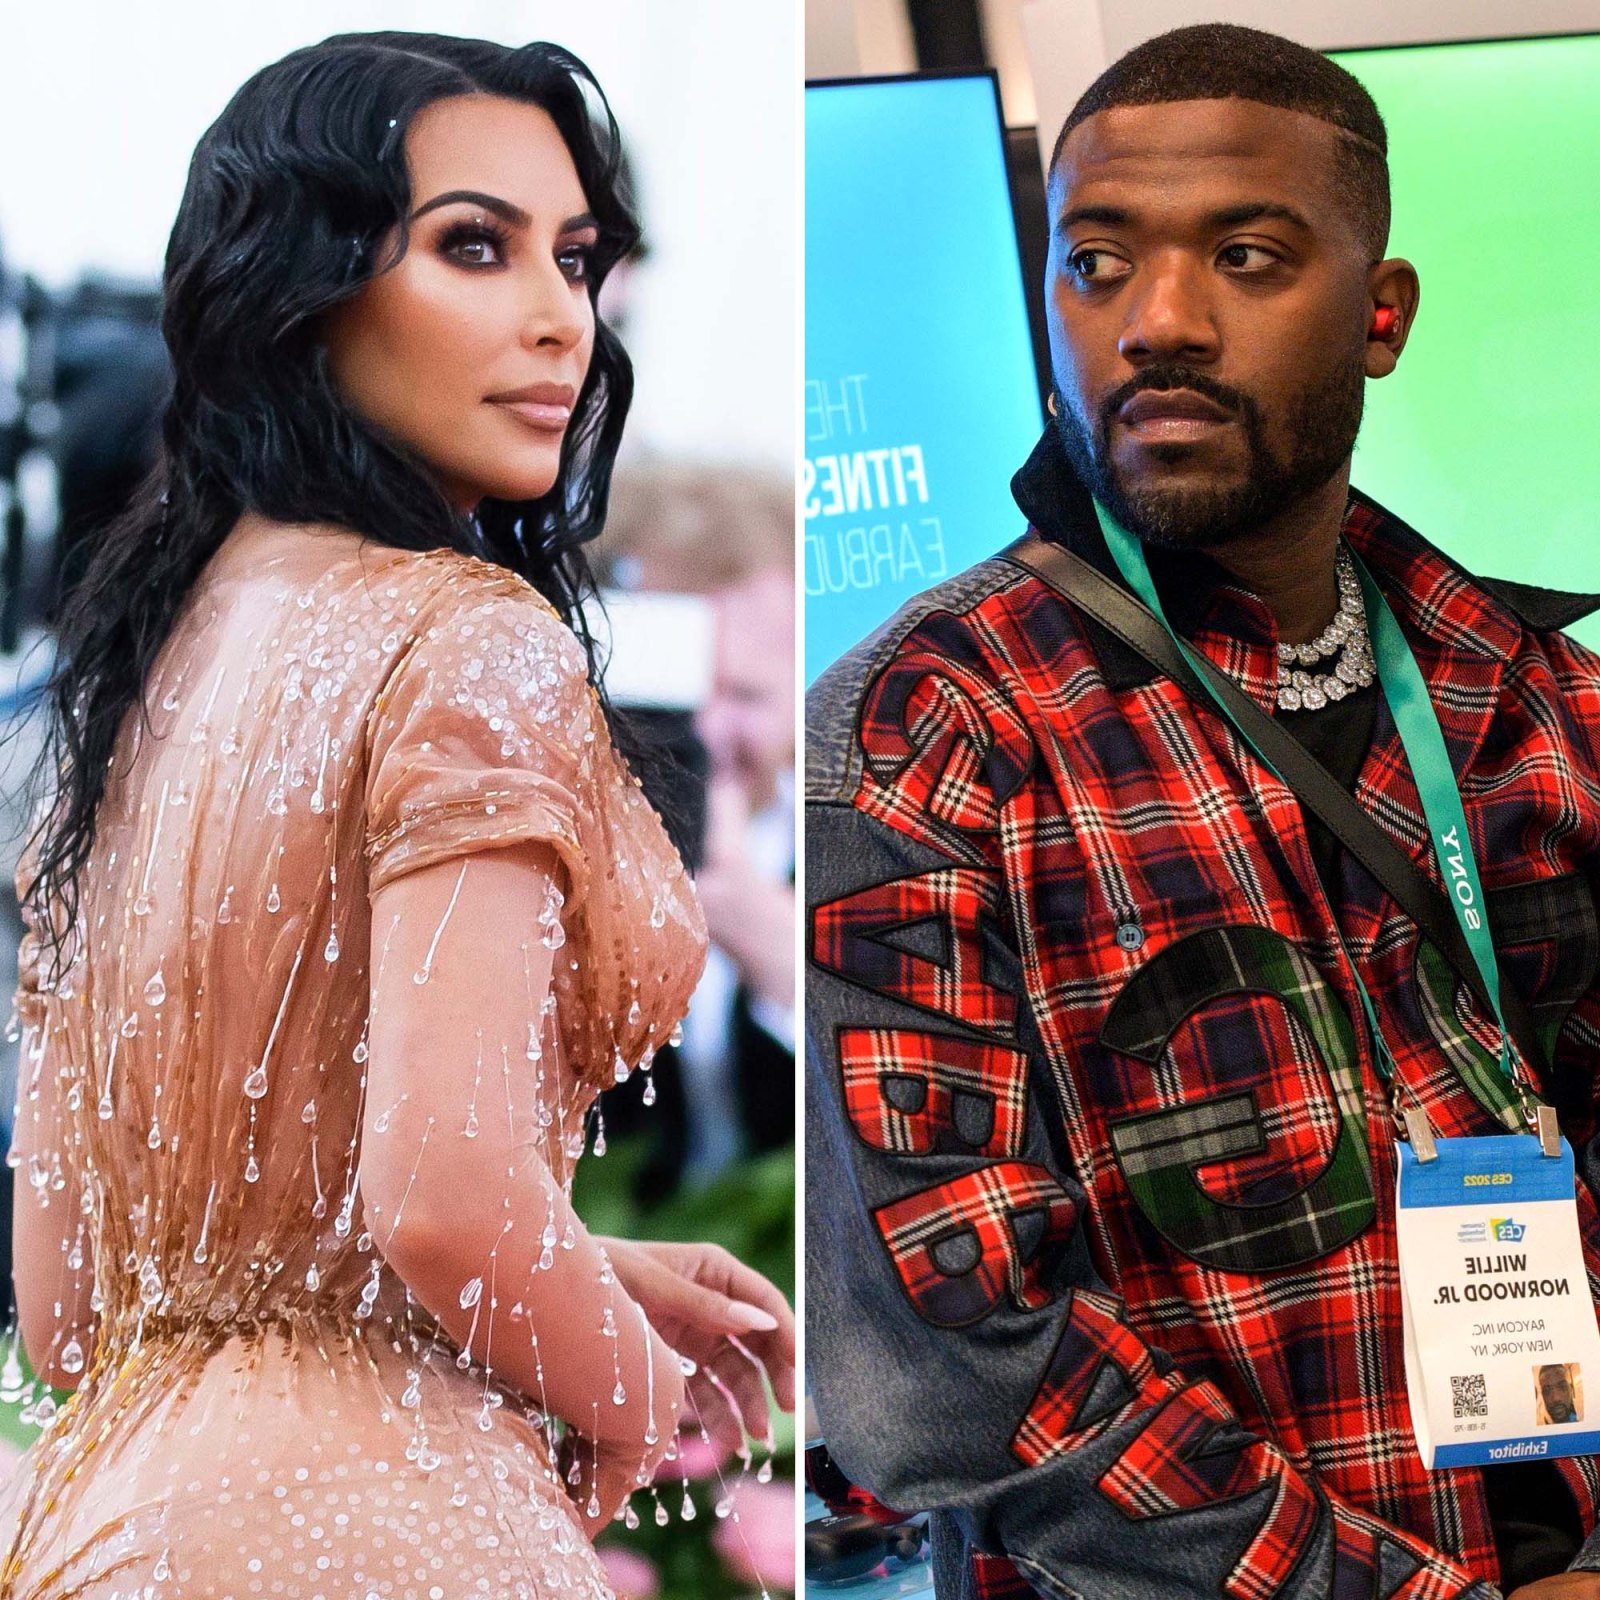 Km Sex Videos - Kim Kardashian, Ray J Sex Tape Drama: Everything They've Said